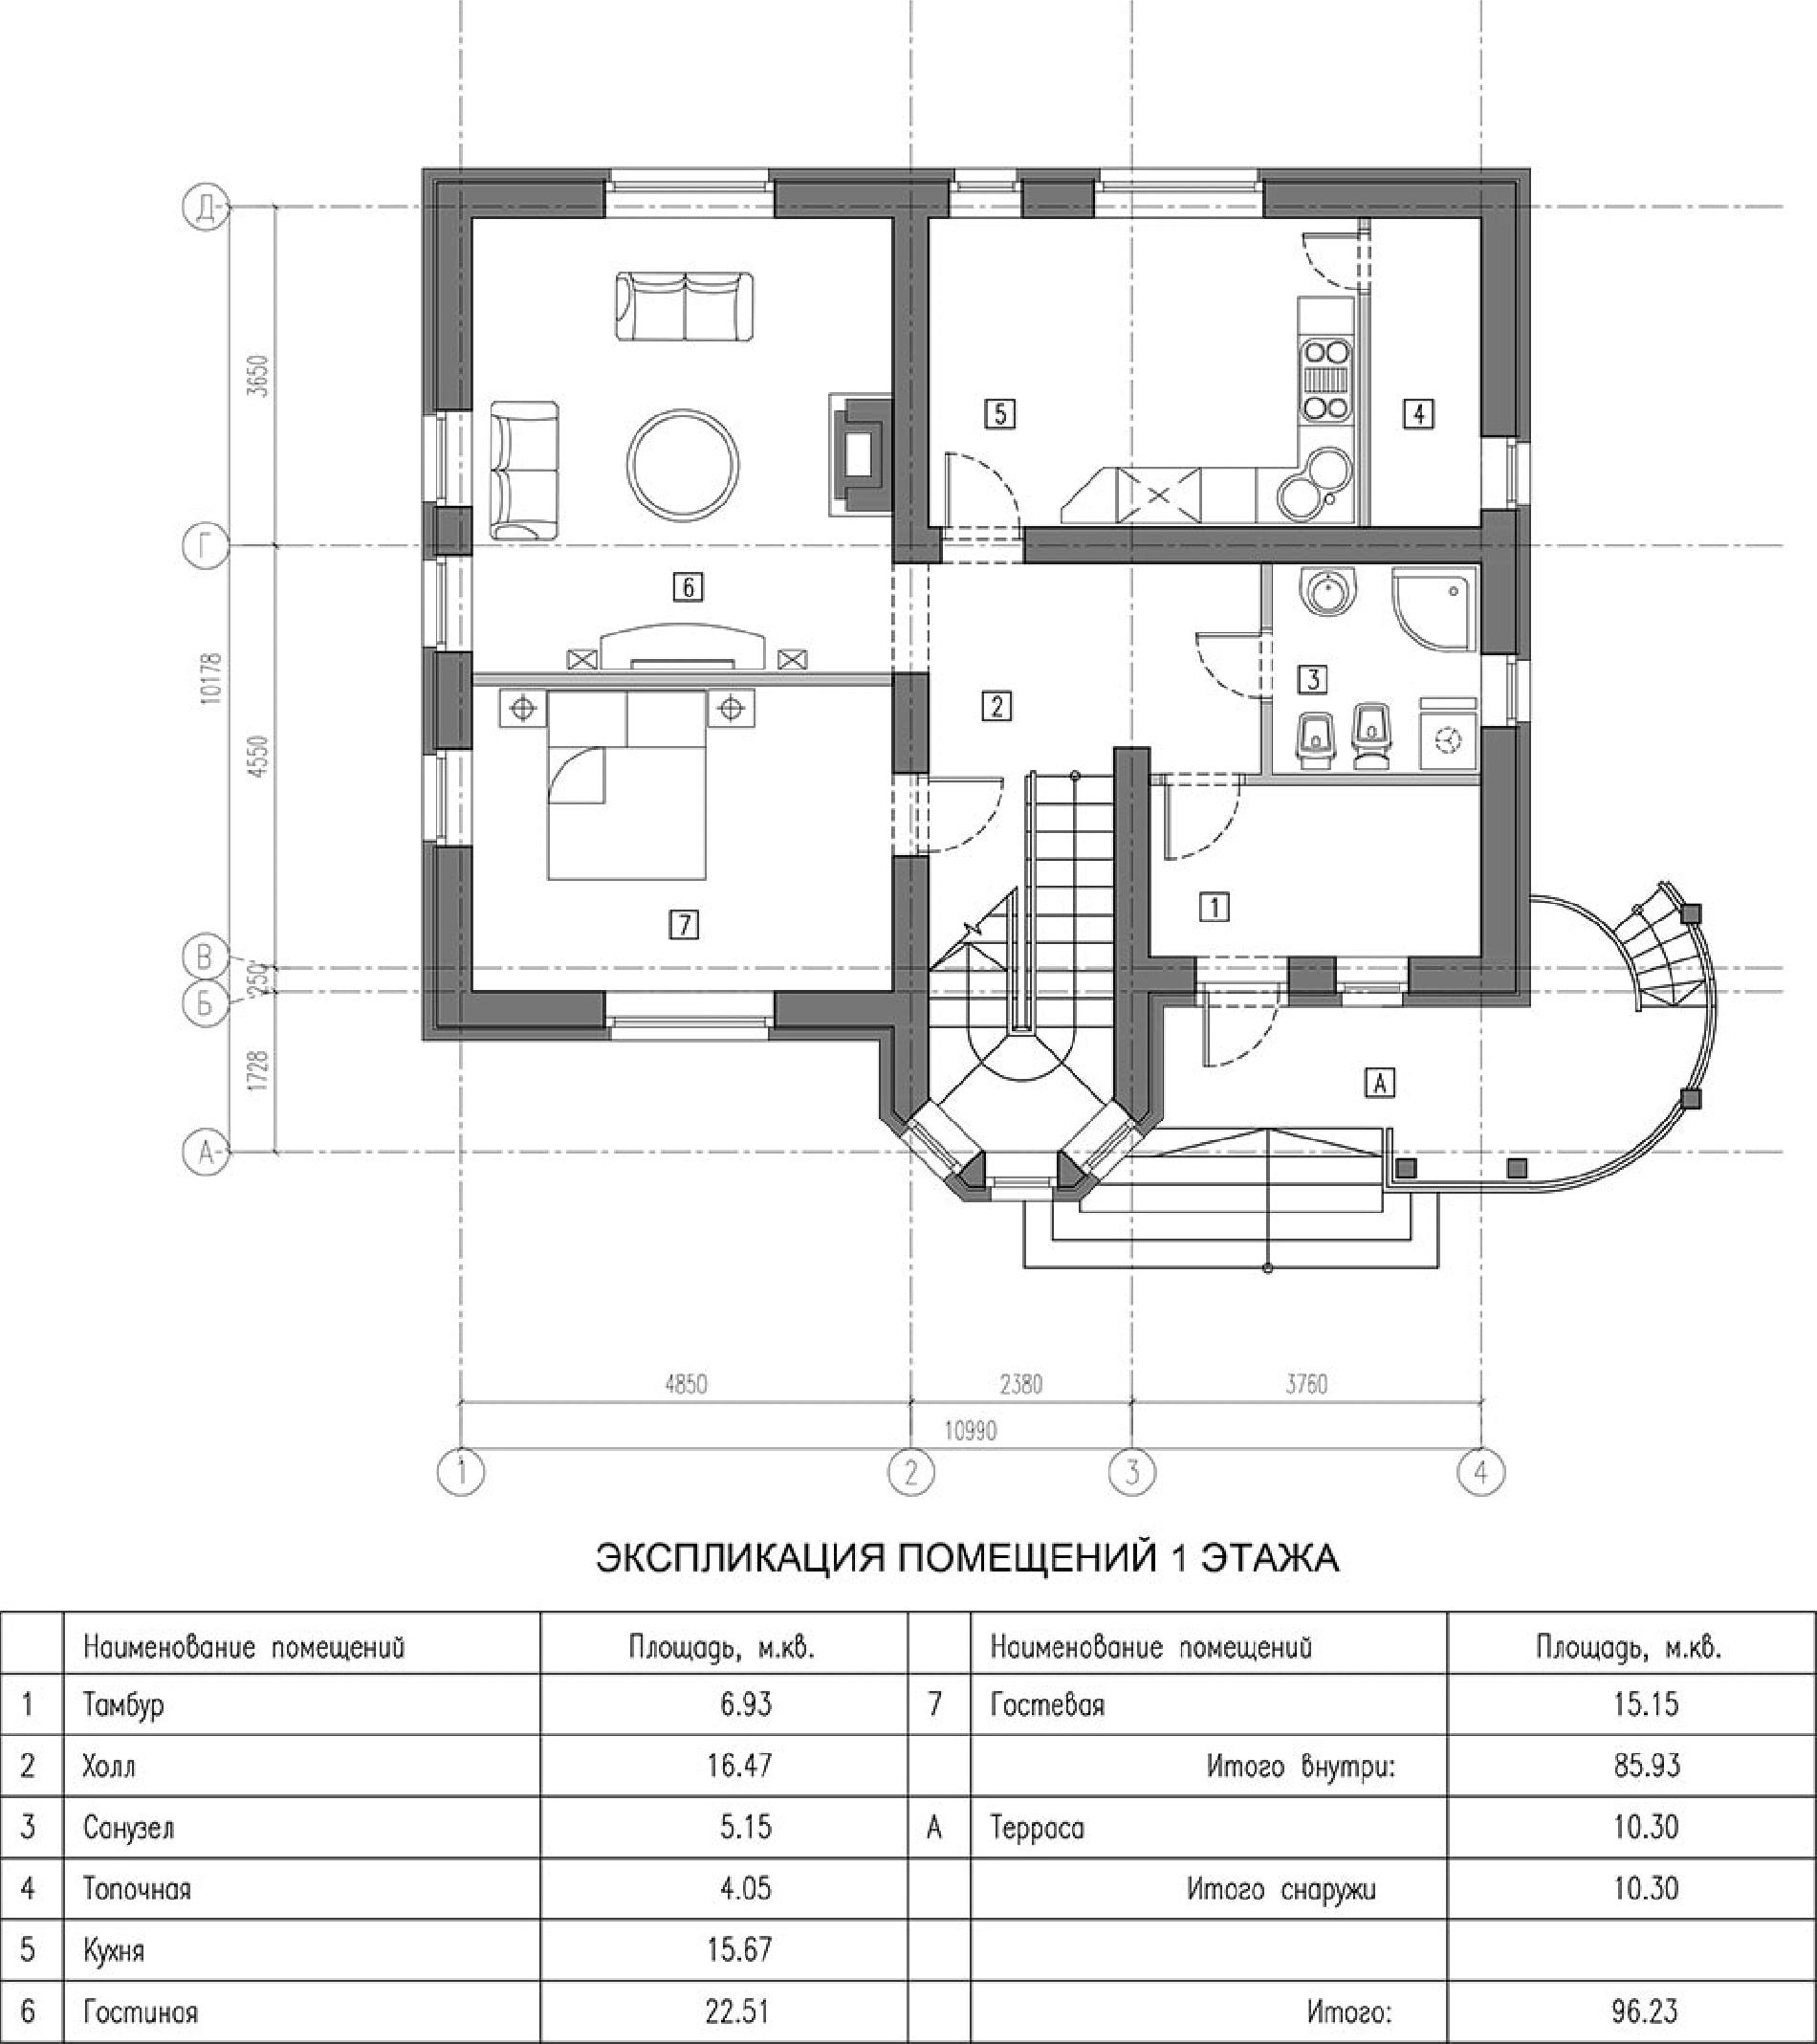 Планировка проекта дома №kr-163 kr-163_p1-min.jpg